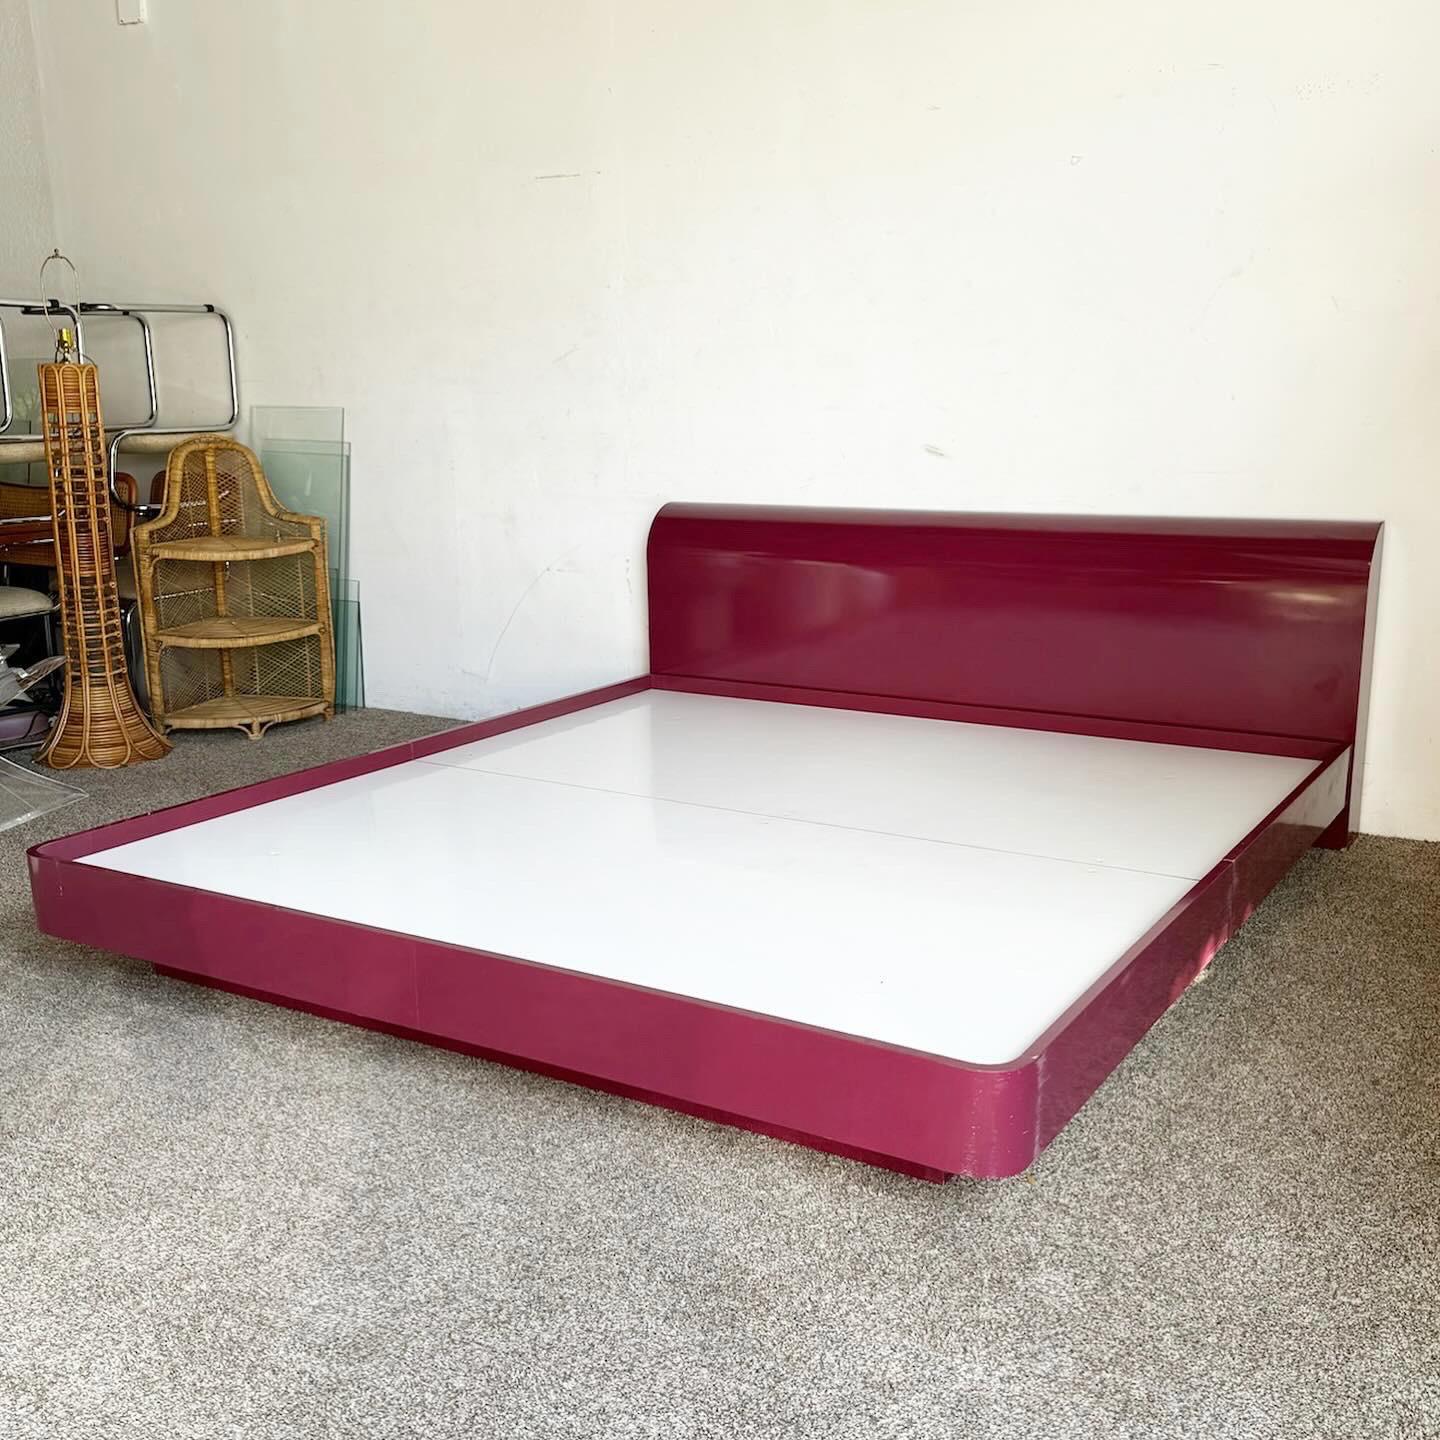 Verwandeln Sie Ihr Schlafzimmer mit dem Postmodern Maroon Lacquer King Bed Set. Dieses Bett mit Kopfteil ist in einen leuchtenden violetten Lack gehüllt und verkörpert die kühne, verspielte Ästhetik der damaligen Zeit. Die schlanken Linien und die